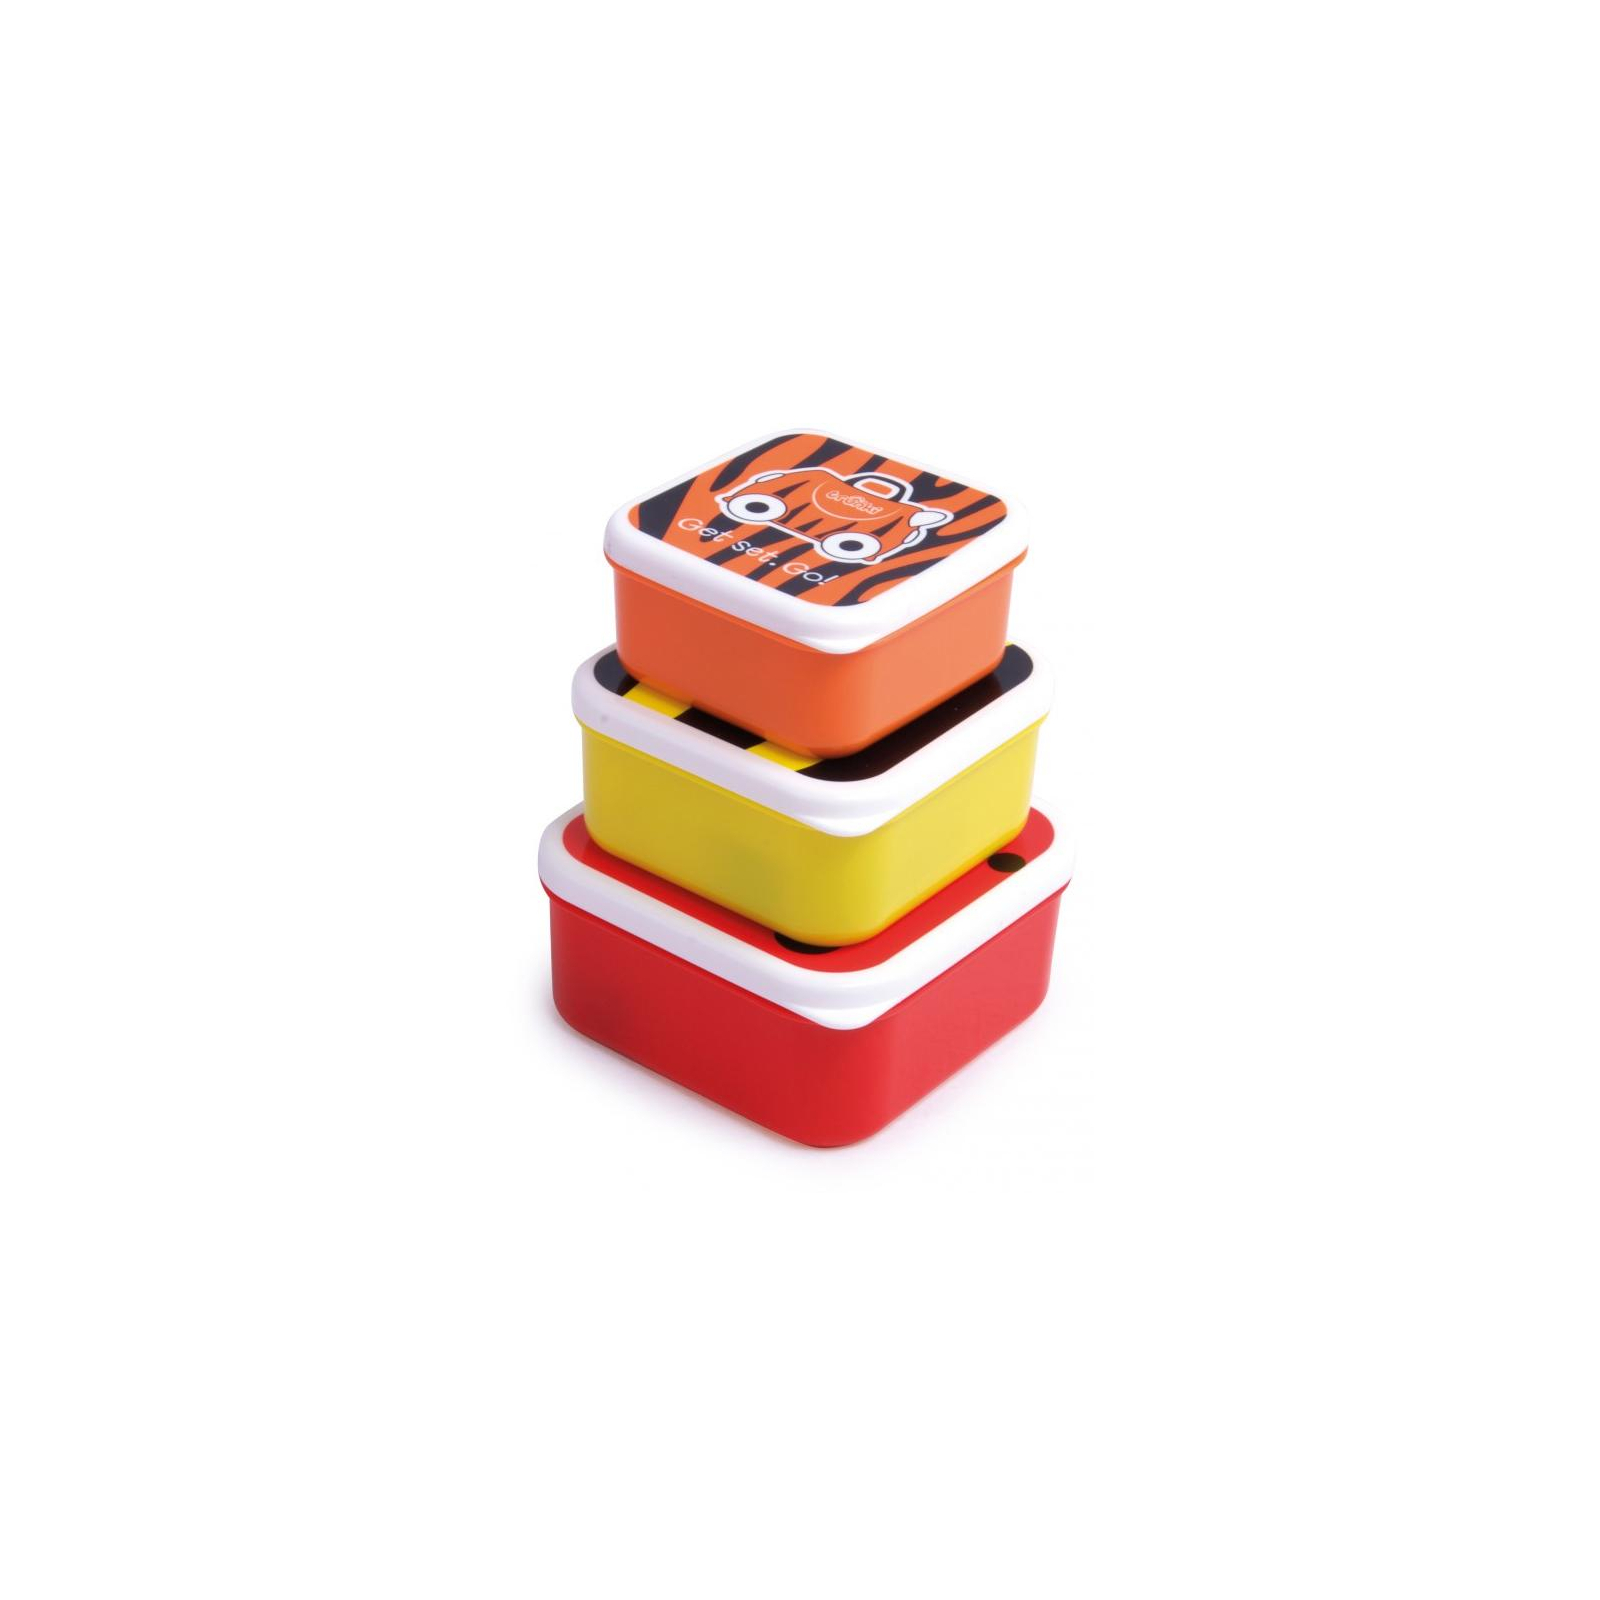 Контейнер для зберігання продуктів Trunki Набор (красный, желтый, оранжевый) (0301-GB01)